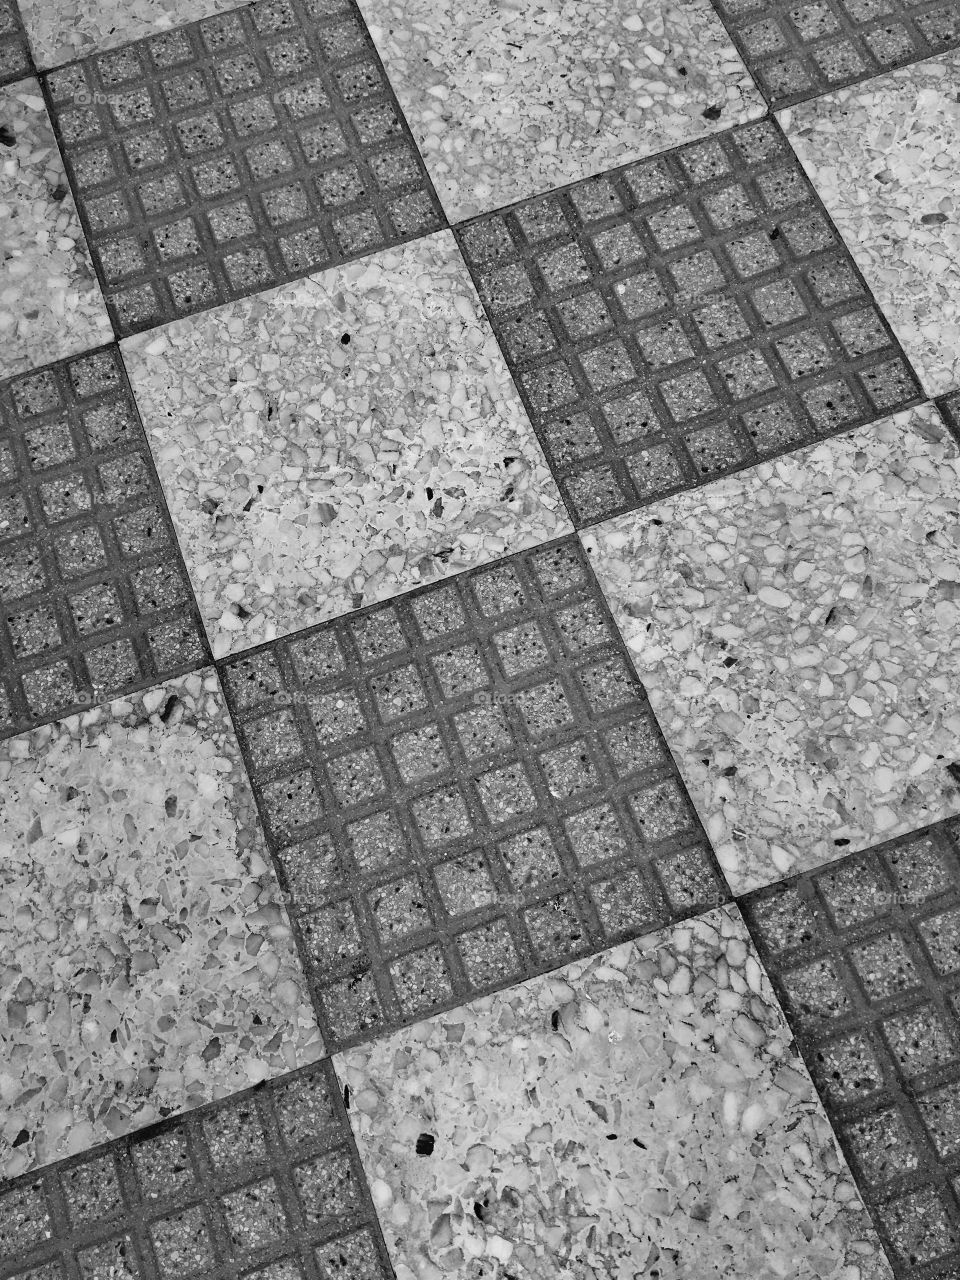 Checkerboard floor